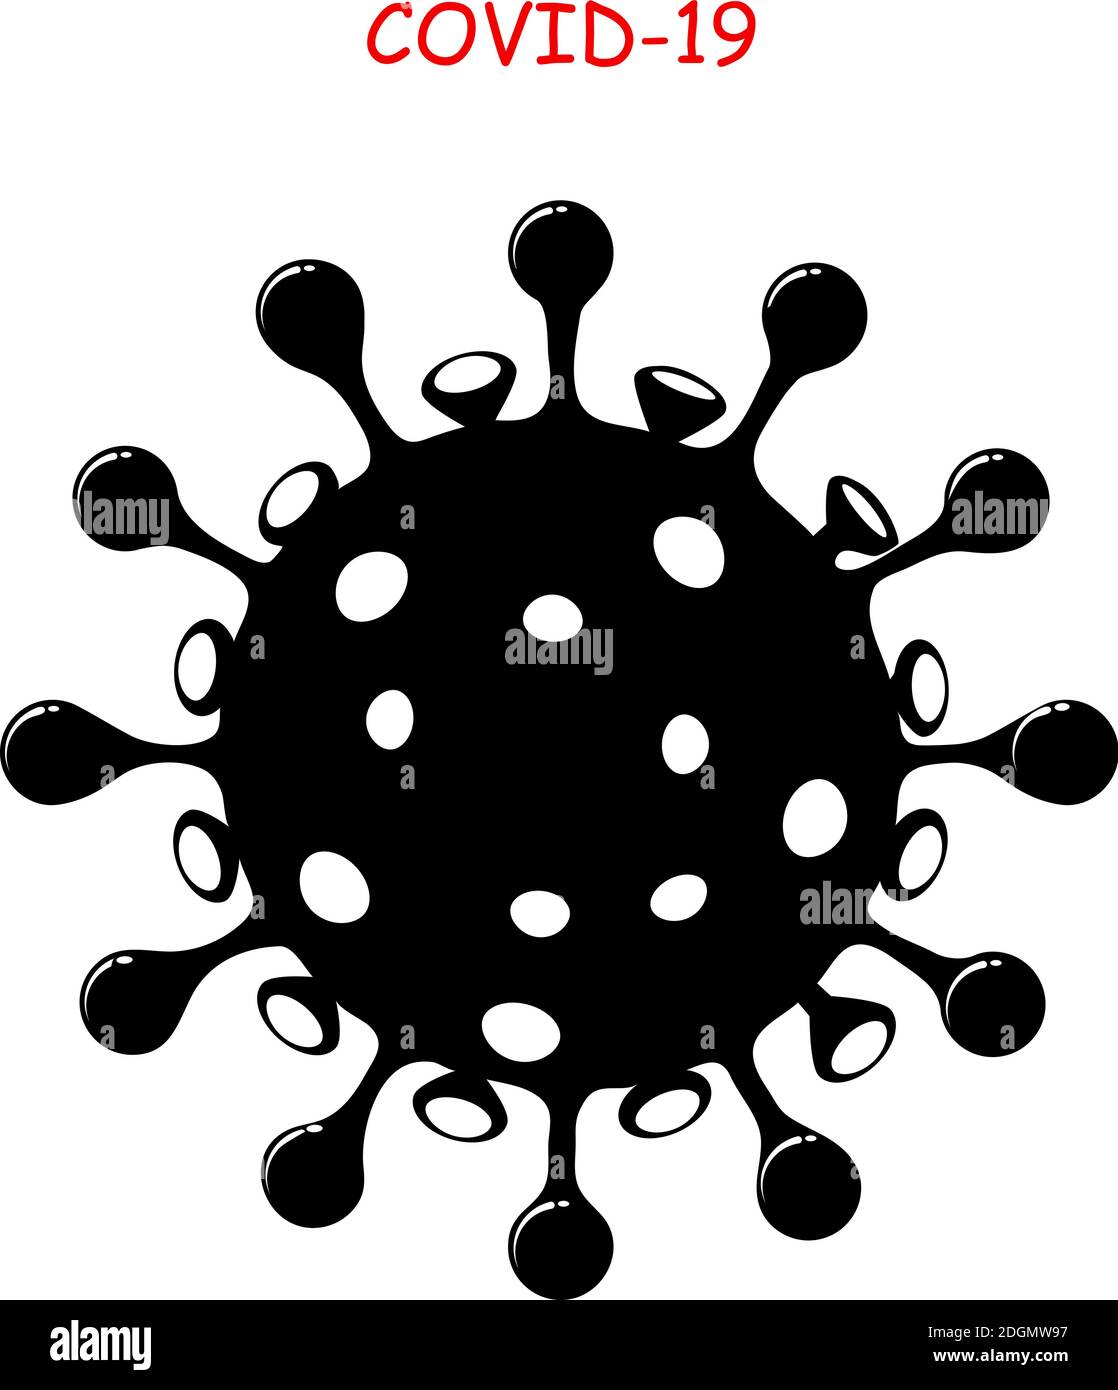 Virus corona icona COVID-19. Coronavirus simbolo nero su sfondo bianco. Illustrazione vettoriale isolata. Influenza o polmonite pandemia. Virion Illustrazione Vettoriale